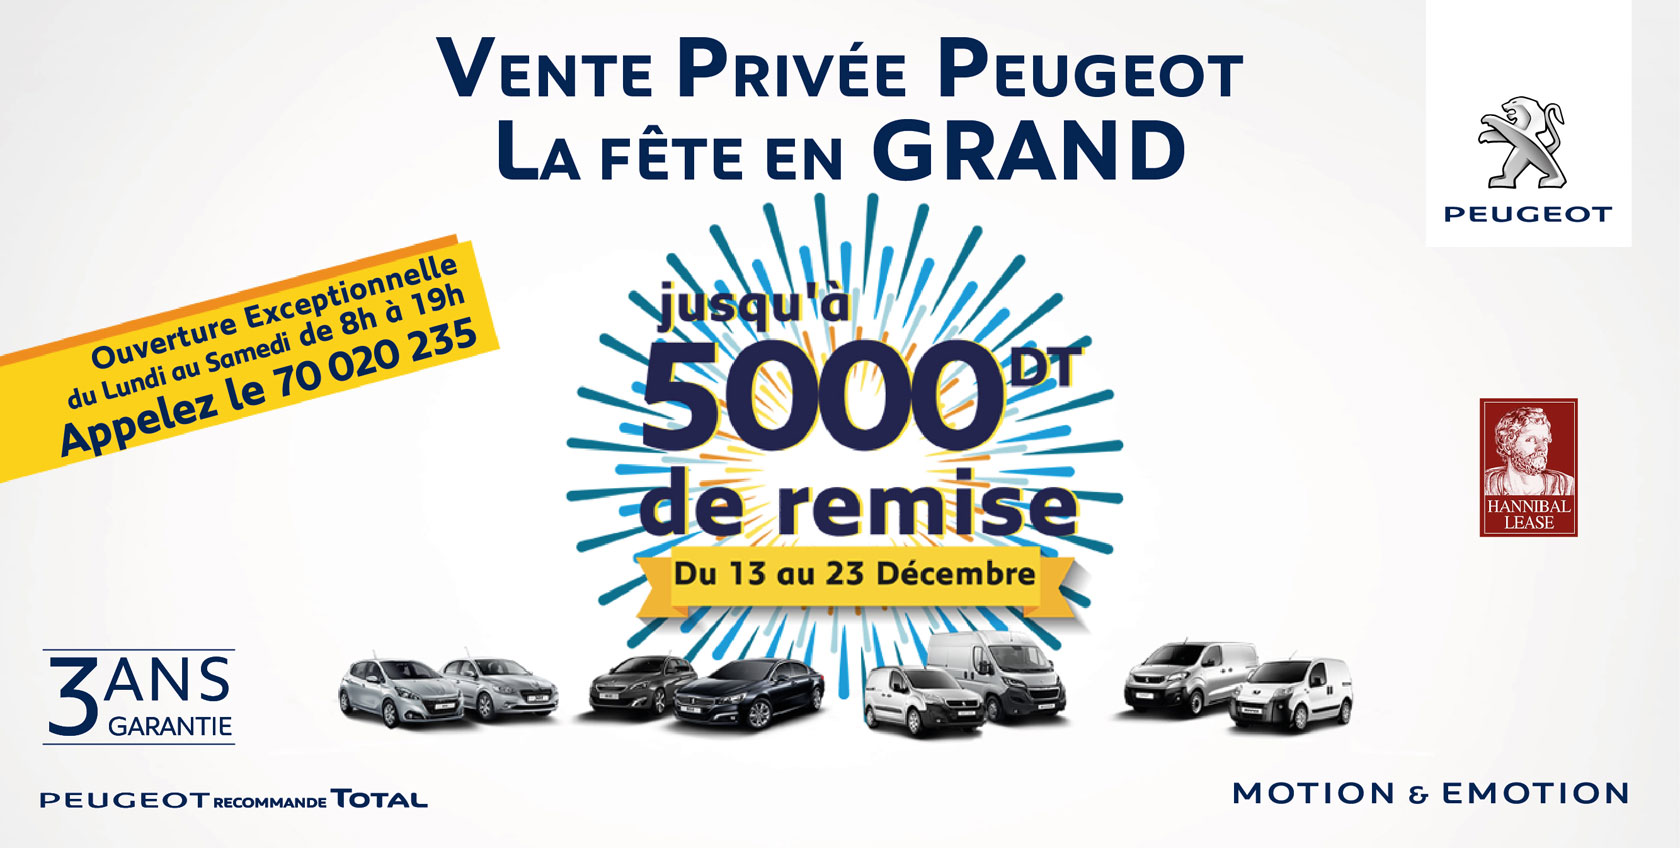 Ne ratez pas les ventes privées Peugeot chez STAFIM